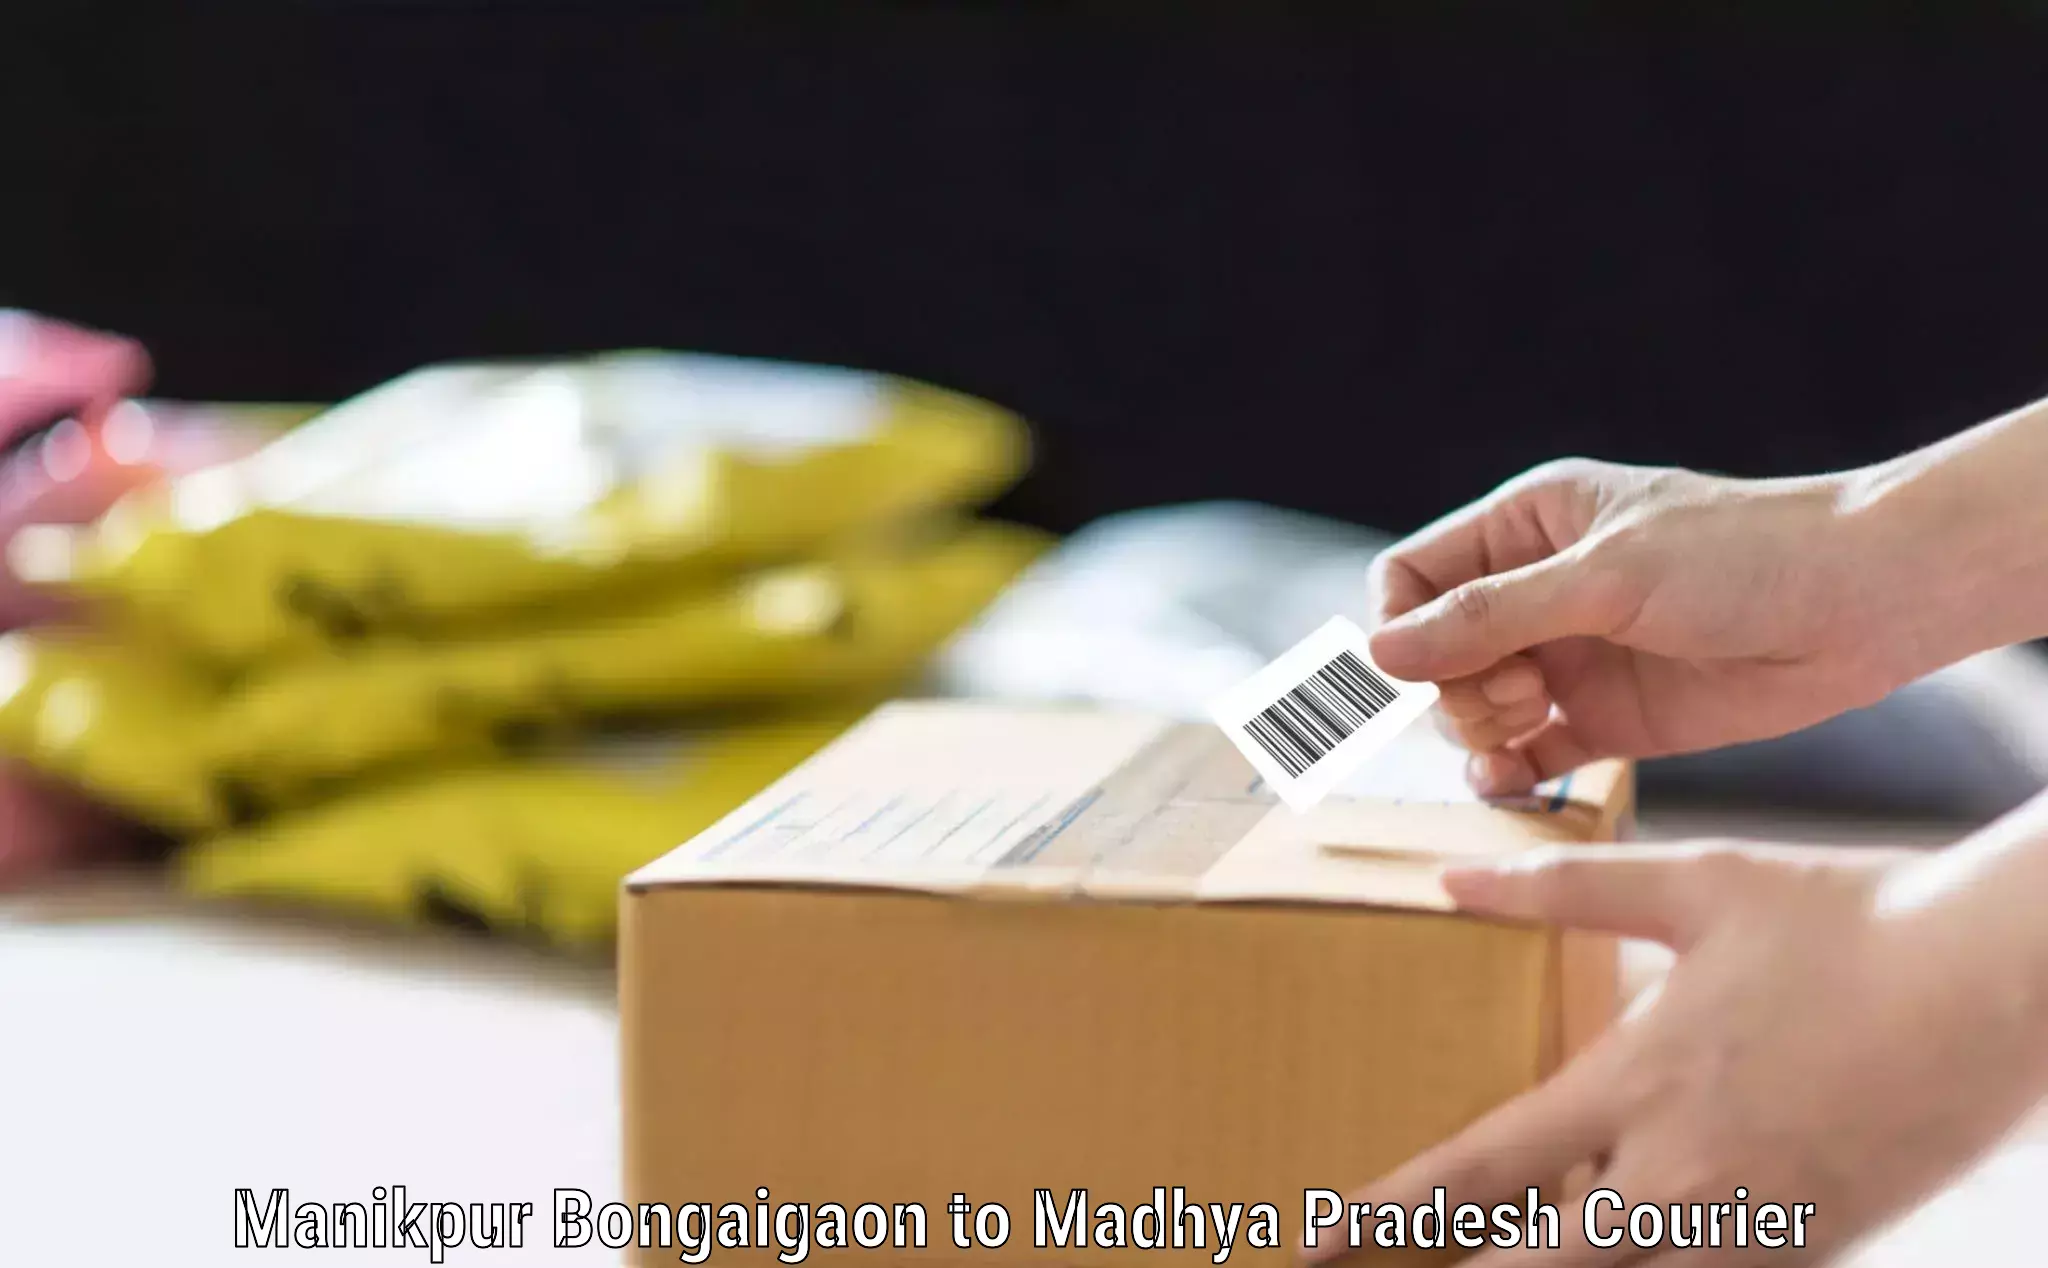 Baggage courier operations Manikpur Bongaigaon to Nagda